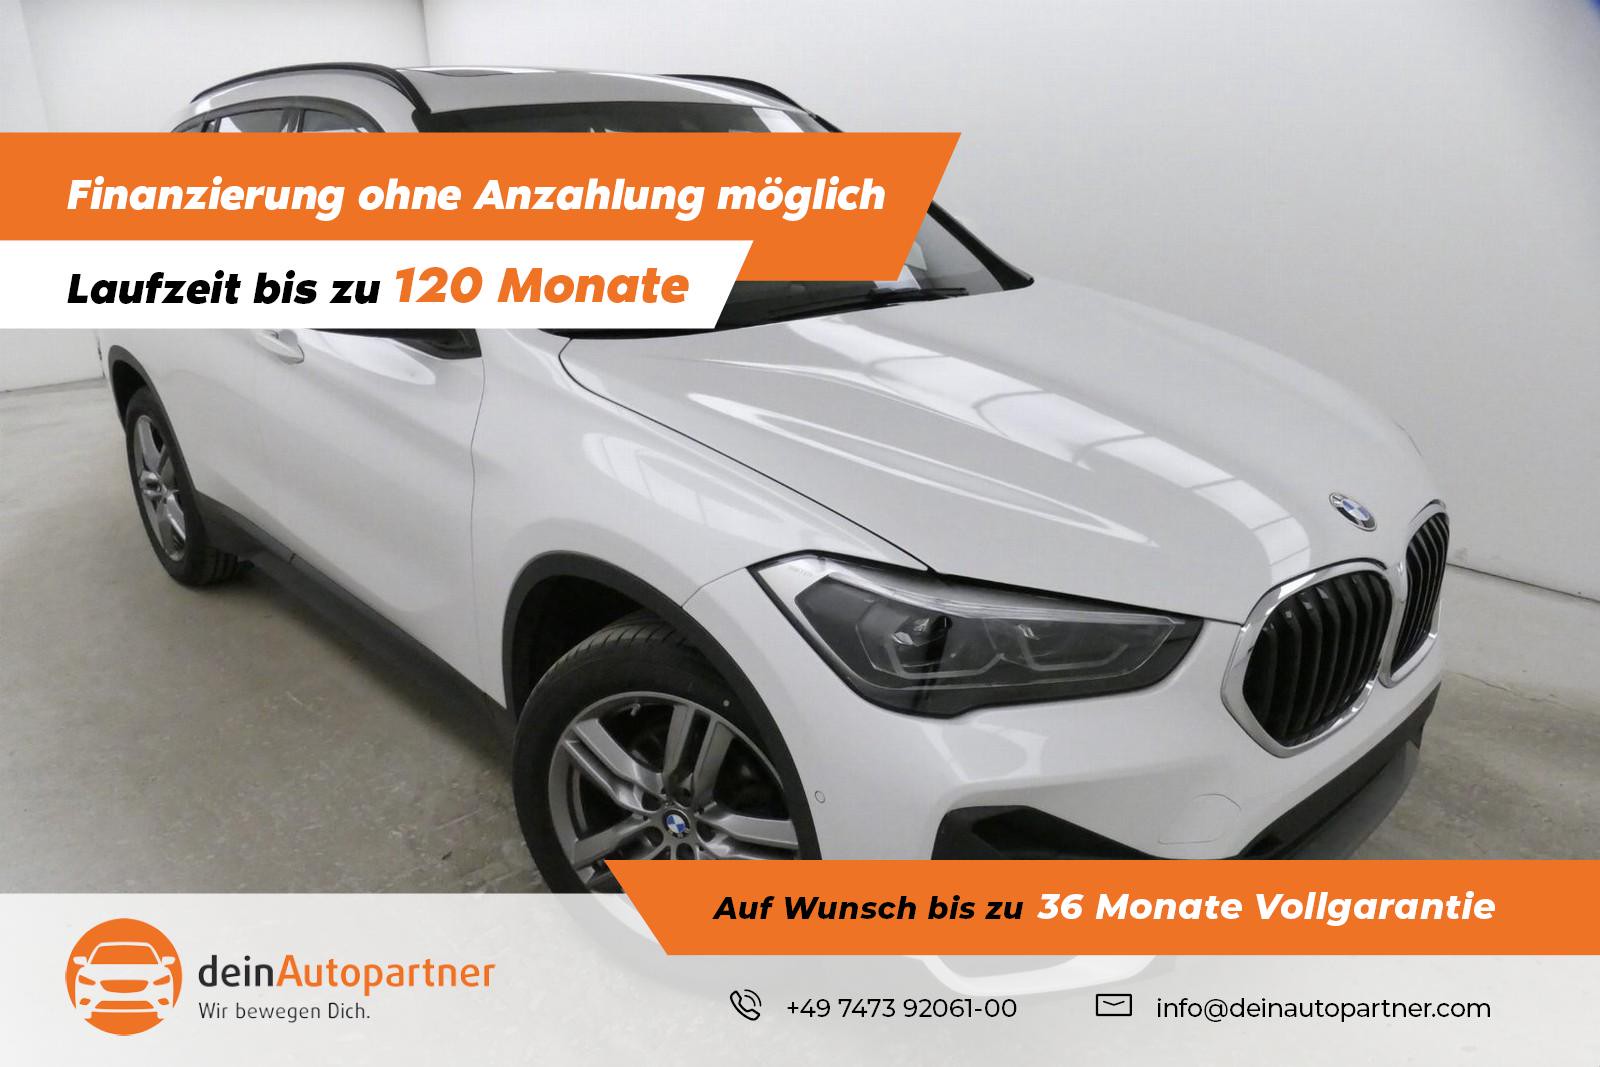 BMW X1 18 i Advantage Leder Panodach LED Navi gebraucht kaufen in Mössingen  Preis 23880 eur - Int.Nr.: 2636 VERKAUFT